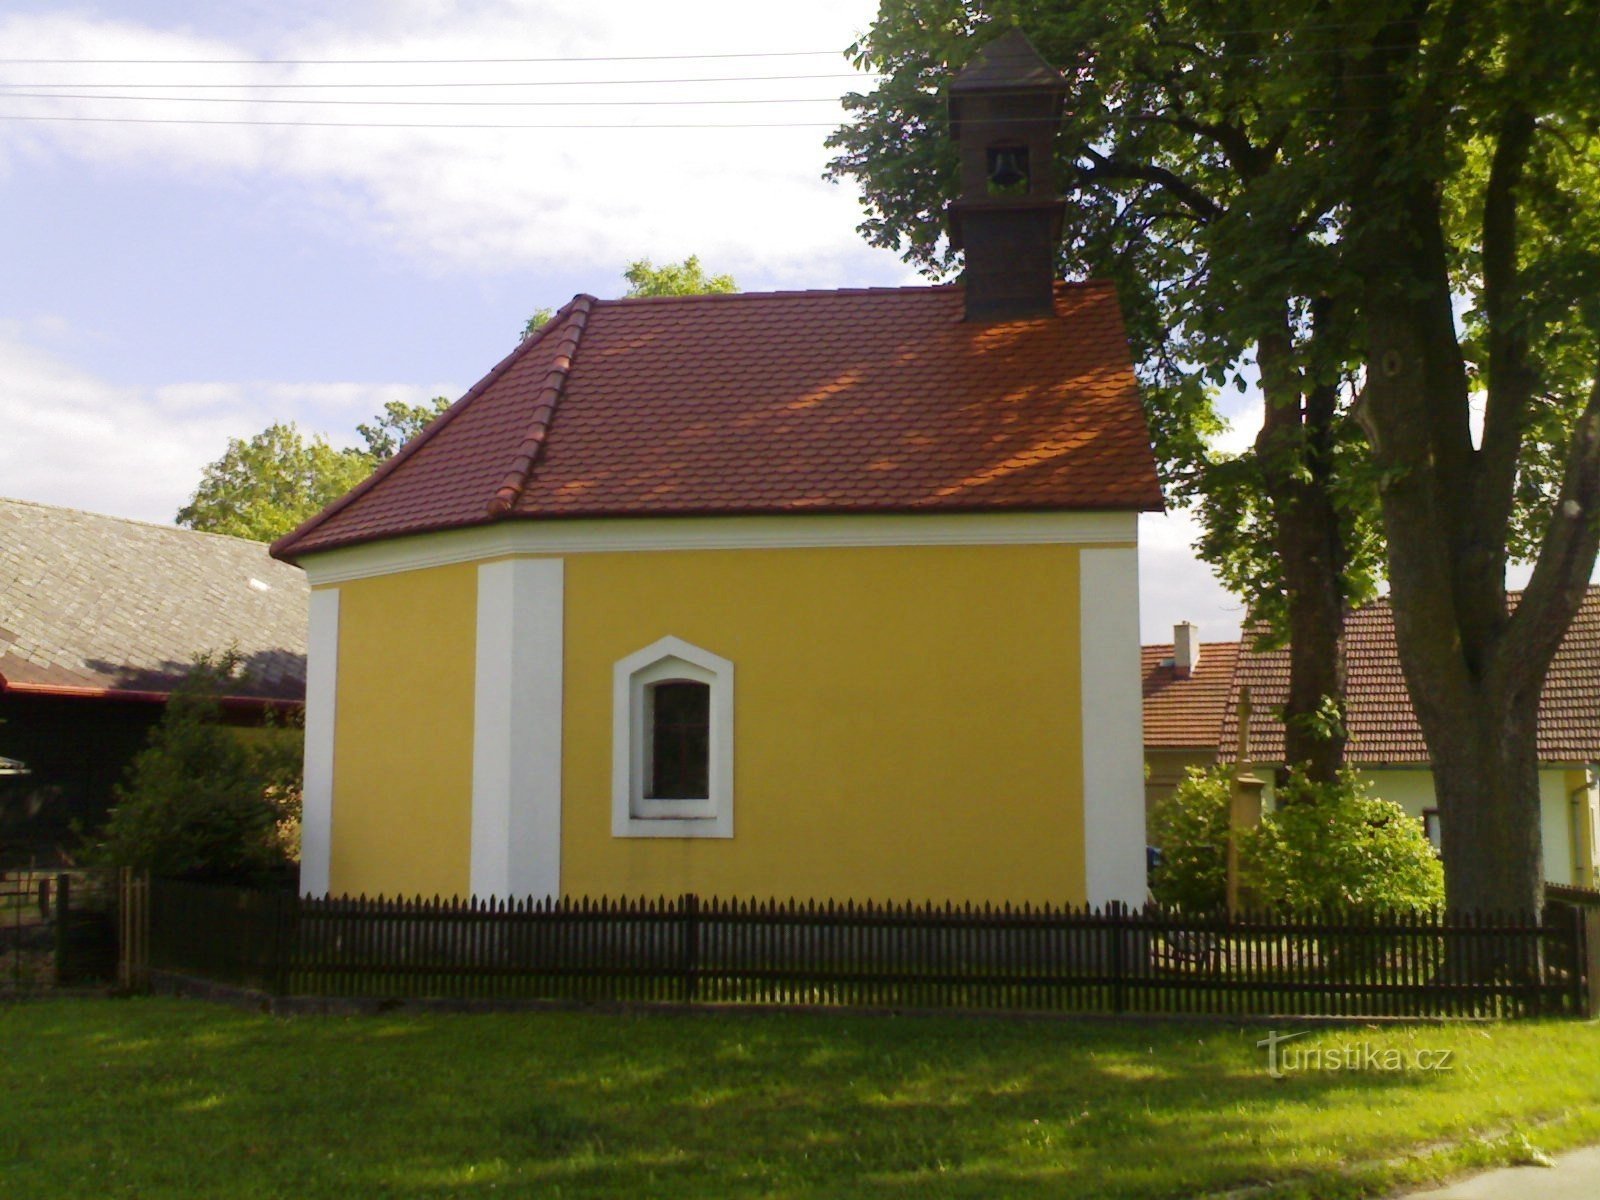 Ježkovice - ルルドの聖母礼拝堂